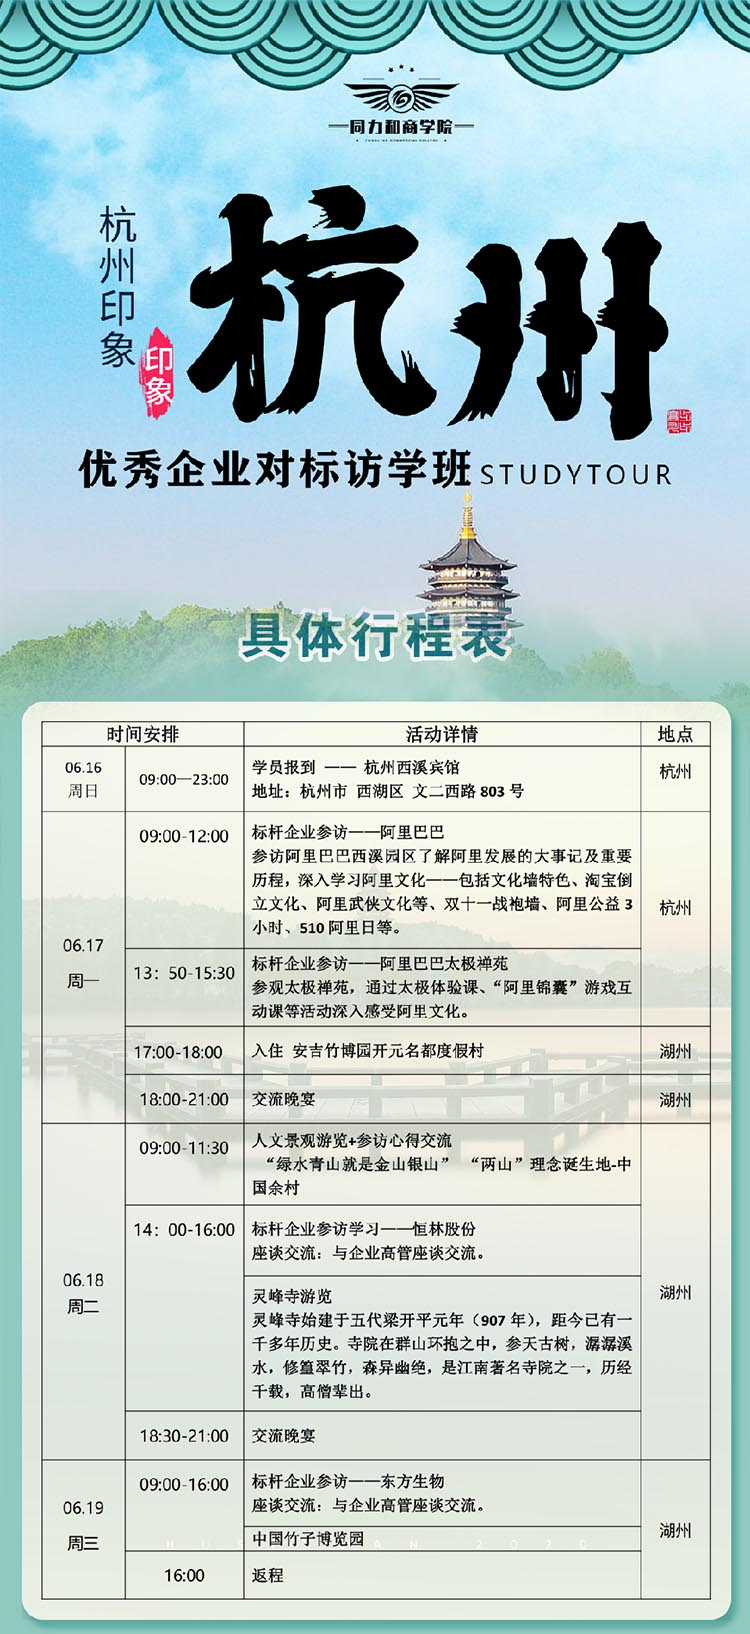 6月16-19日优秀企业对标访学班（杭州）行程安排